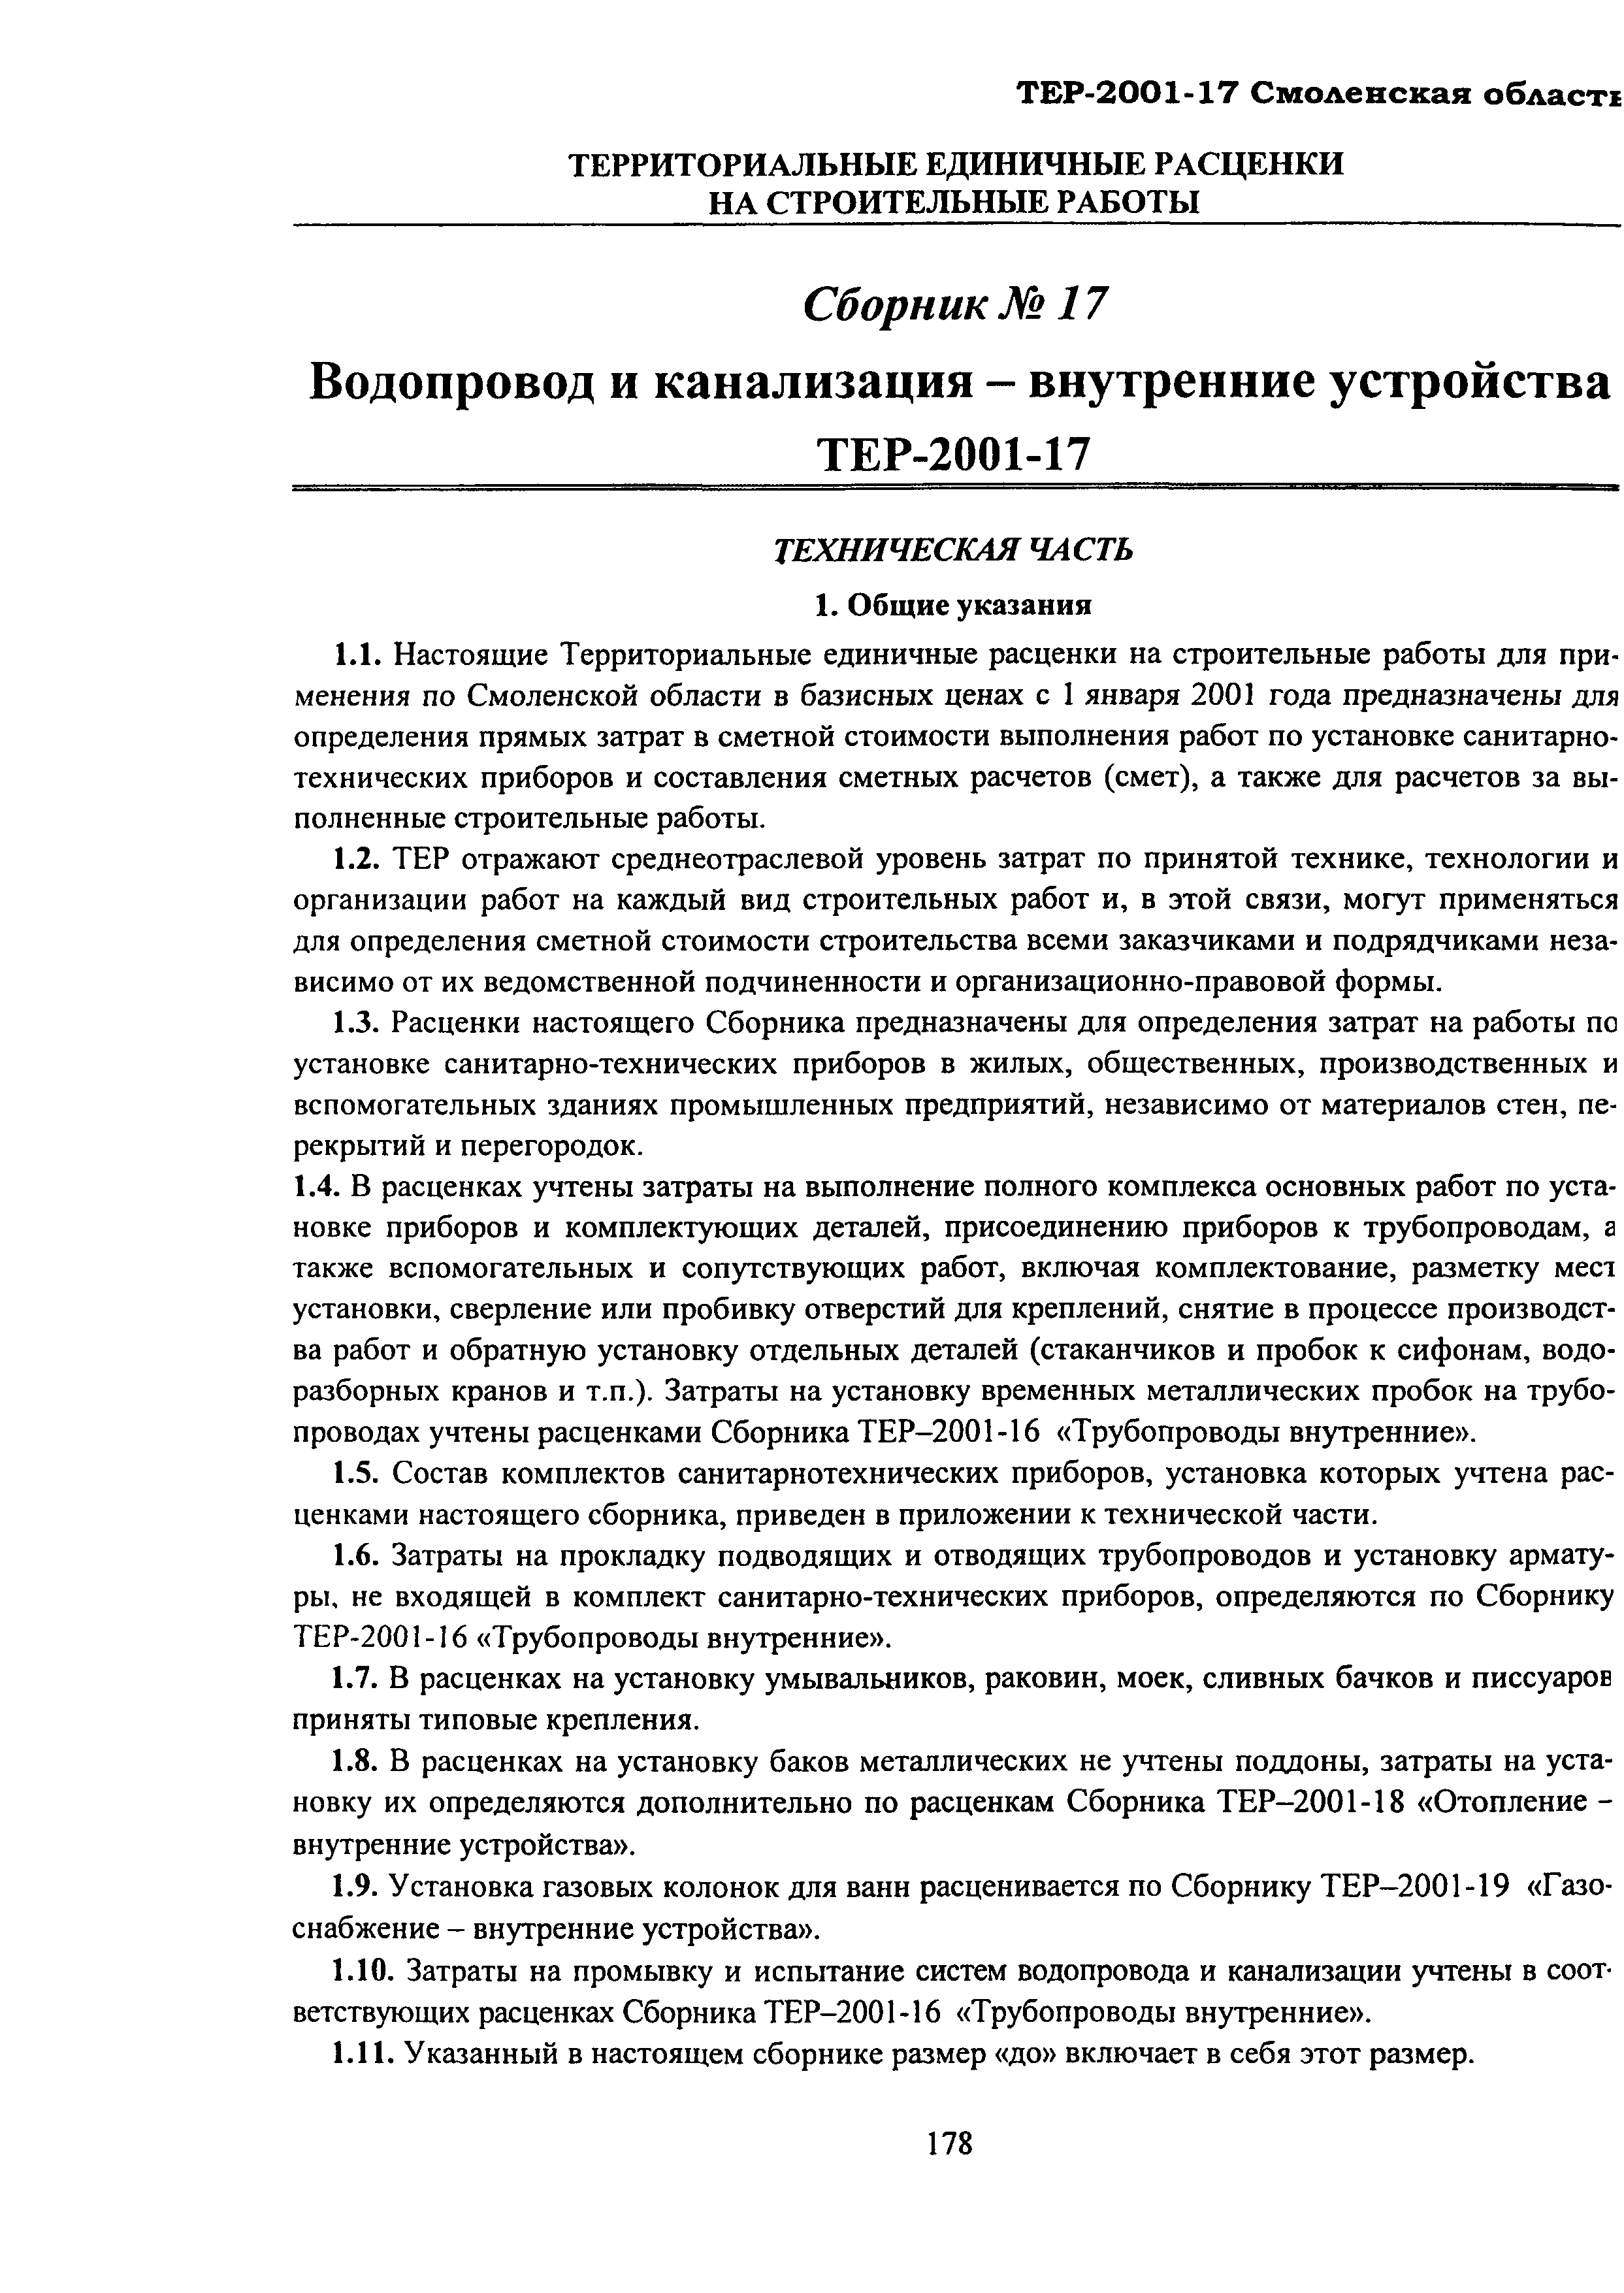 ТЕР Смоленской обл. 2001-17